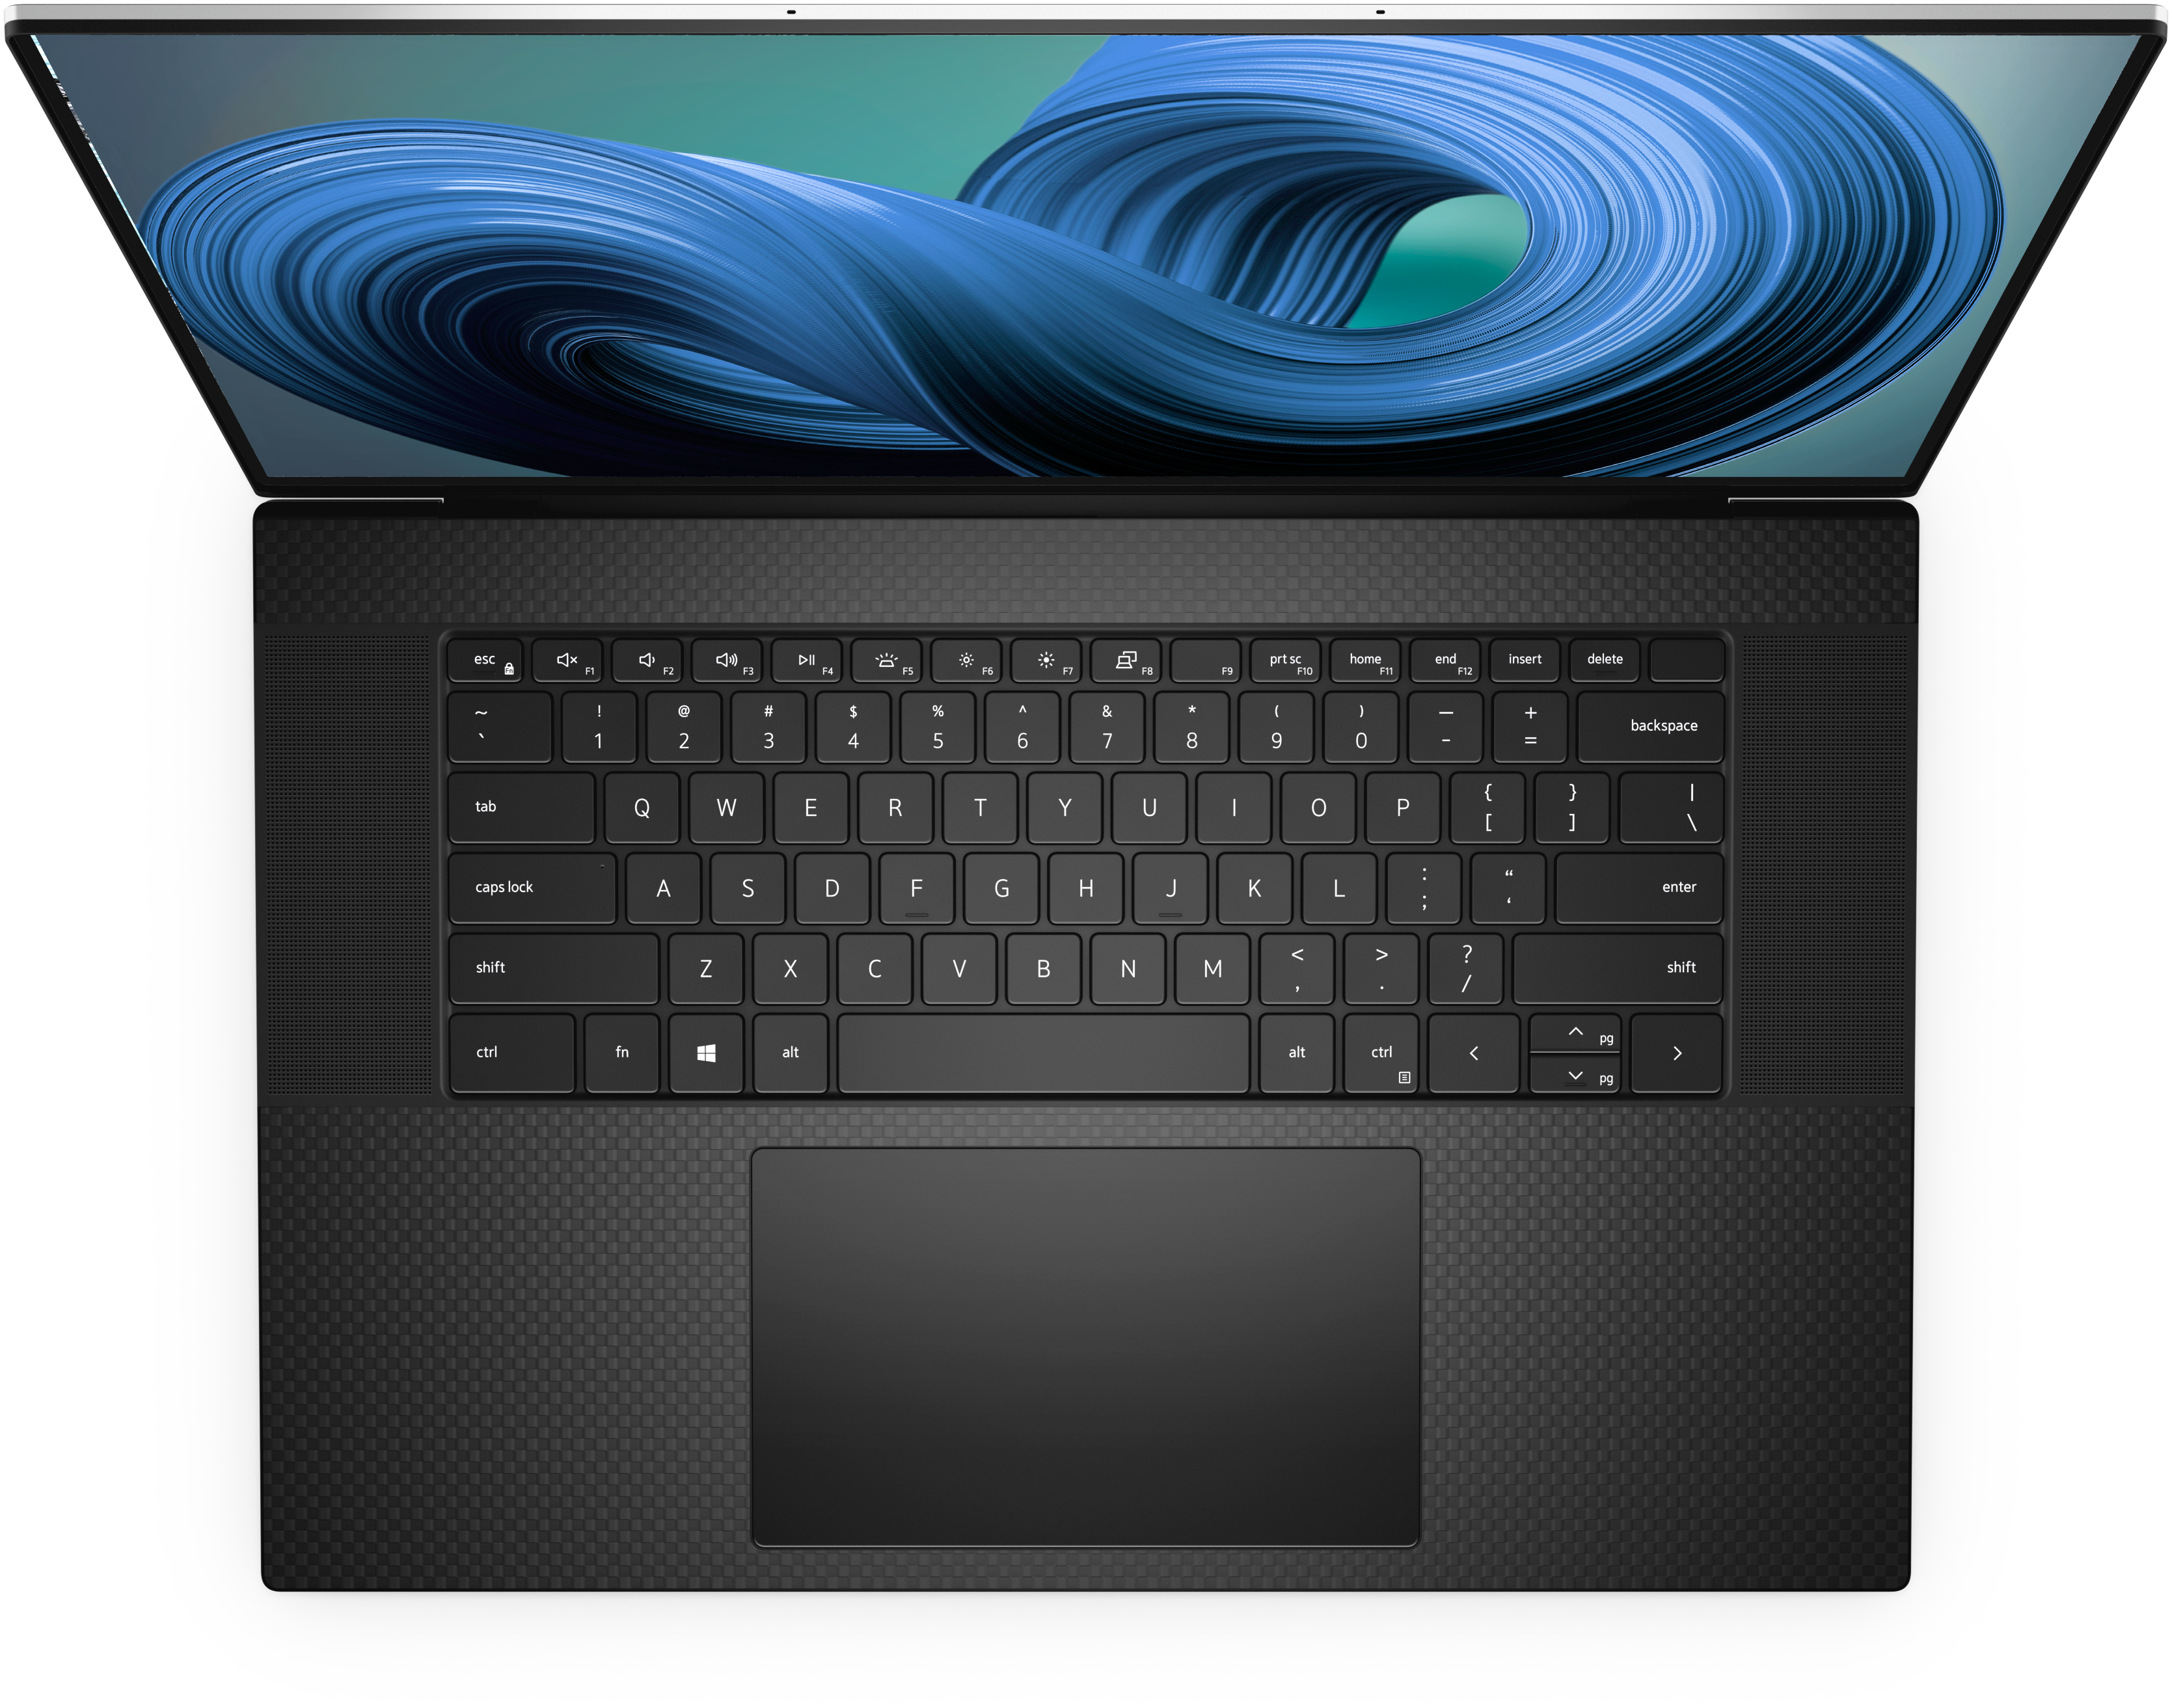 Có thể chúng ta sẽ không có được các tính năng hiện đại như cảm ứng lực, nhưng cách mà Dell hoàn thiện với touchpad này chắc chắn sẽ khiến bạn hài lòng